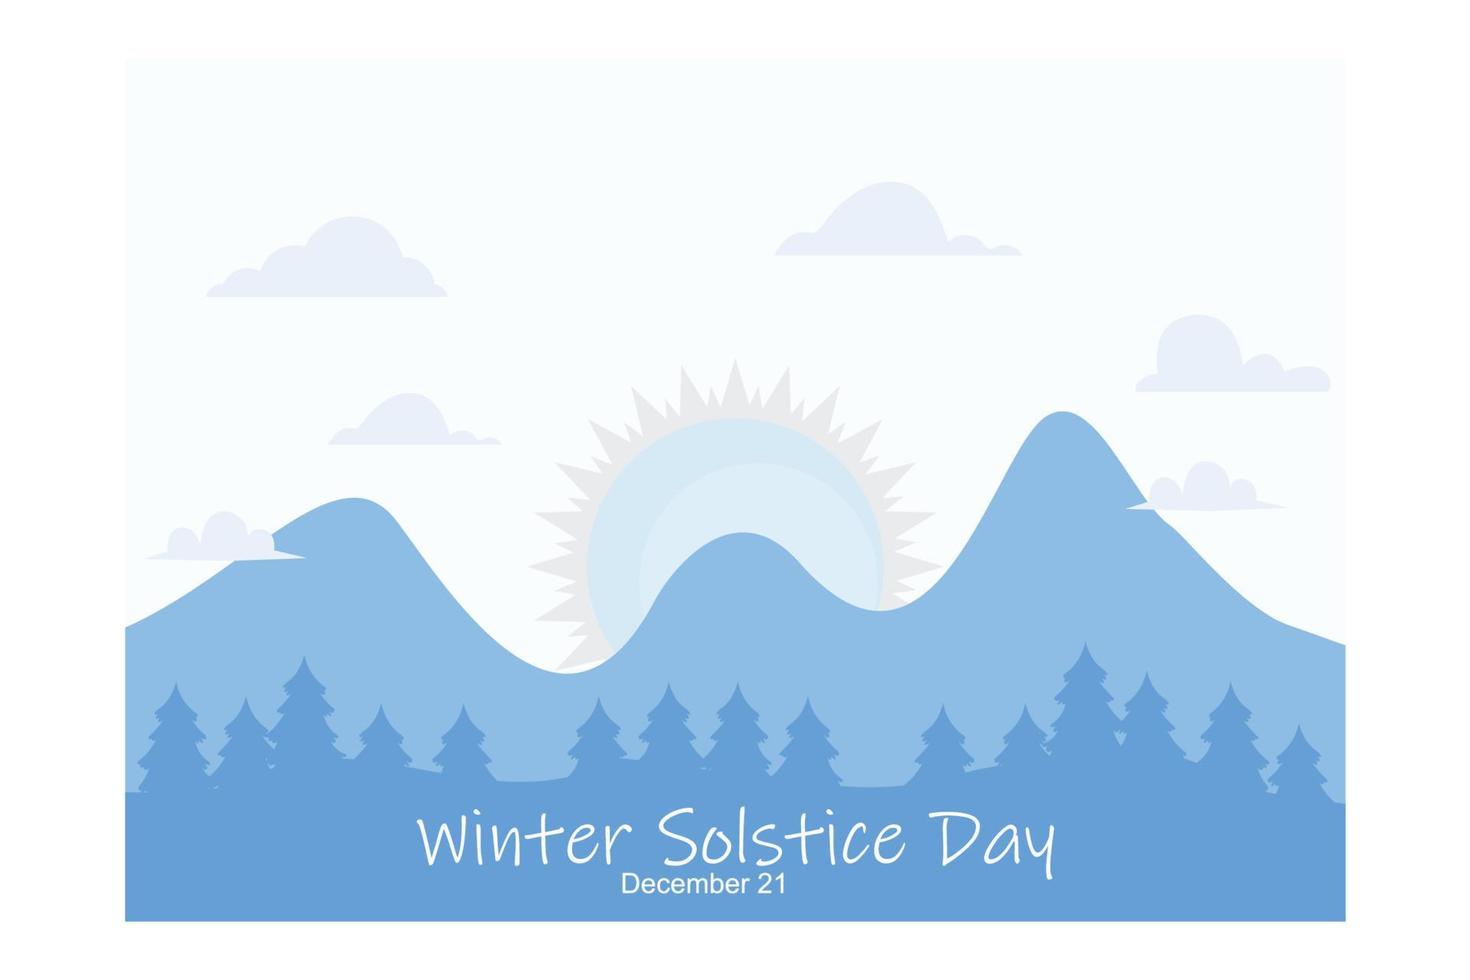 afiche o pancarta del tema del día del solsticio de invierno, adecuado para afiches, pancartas, campaña y tarjeta de saludo, ilustración moderna vectorial plana vector